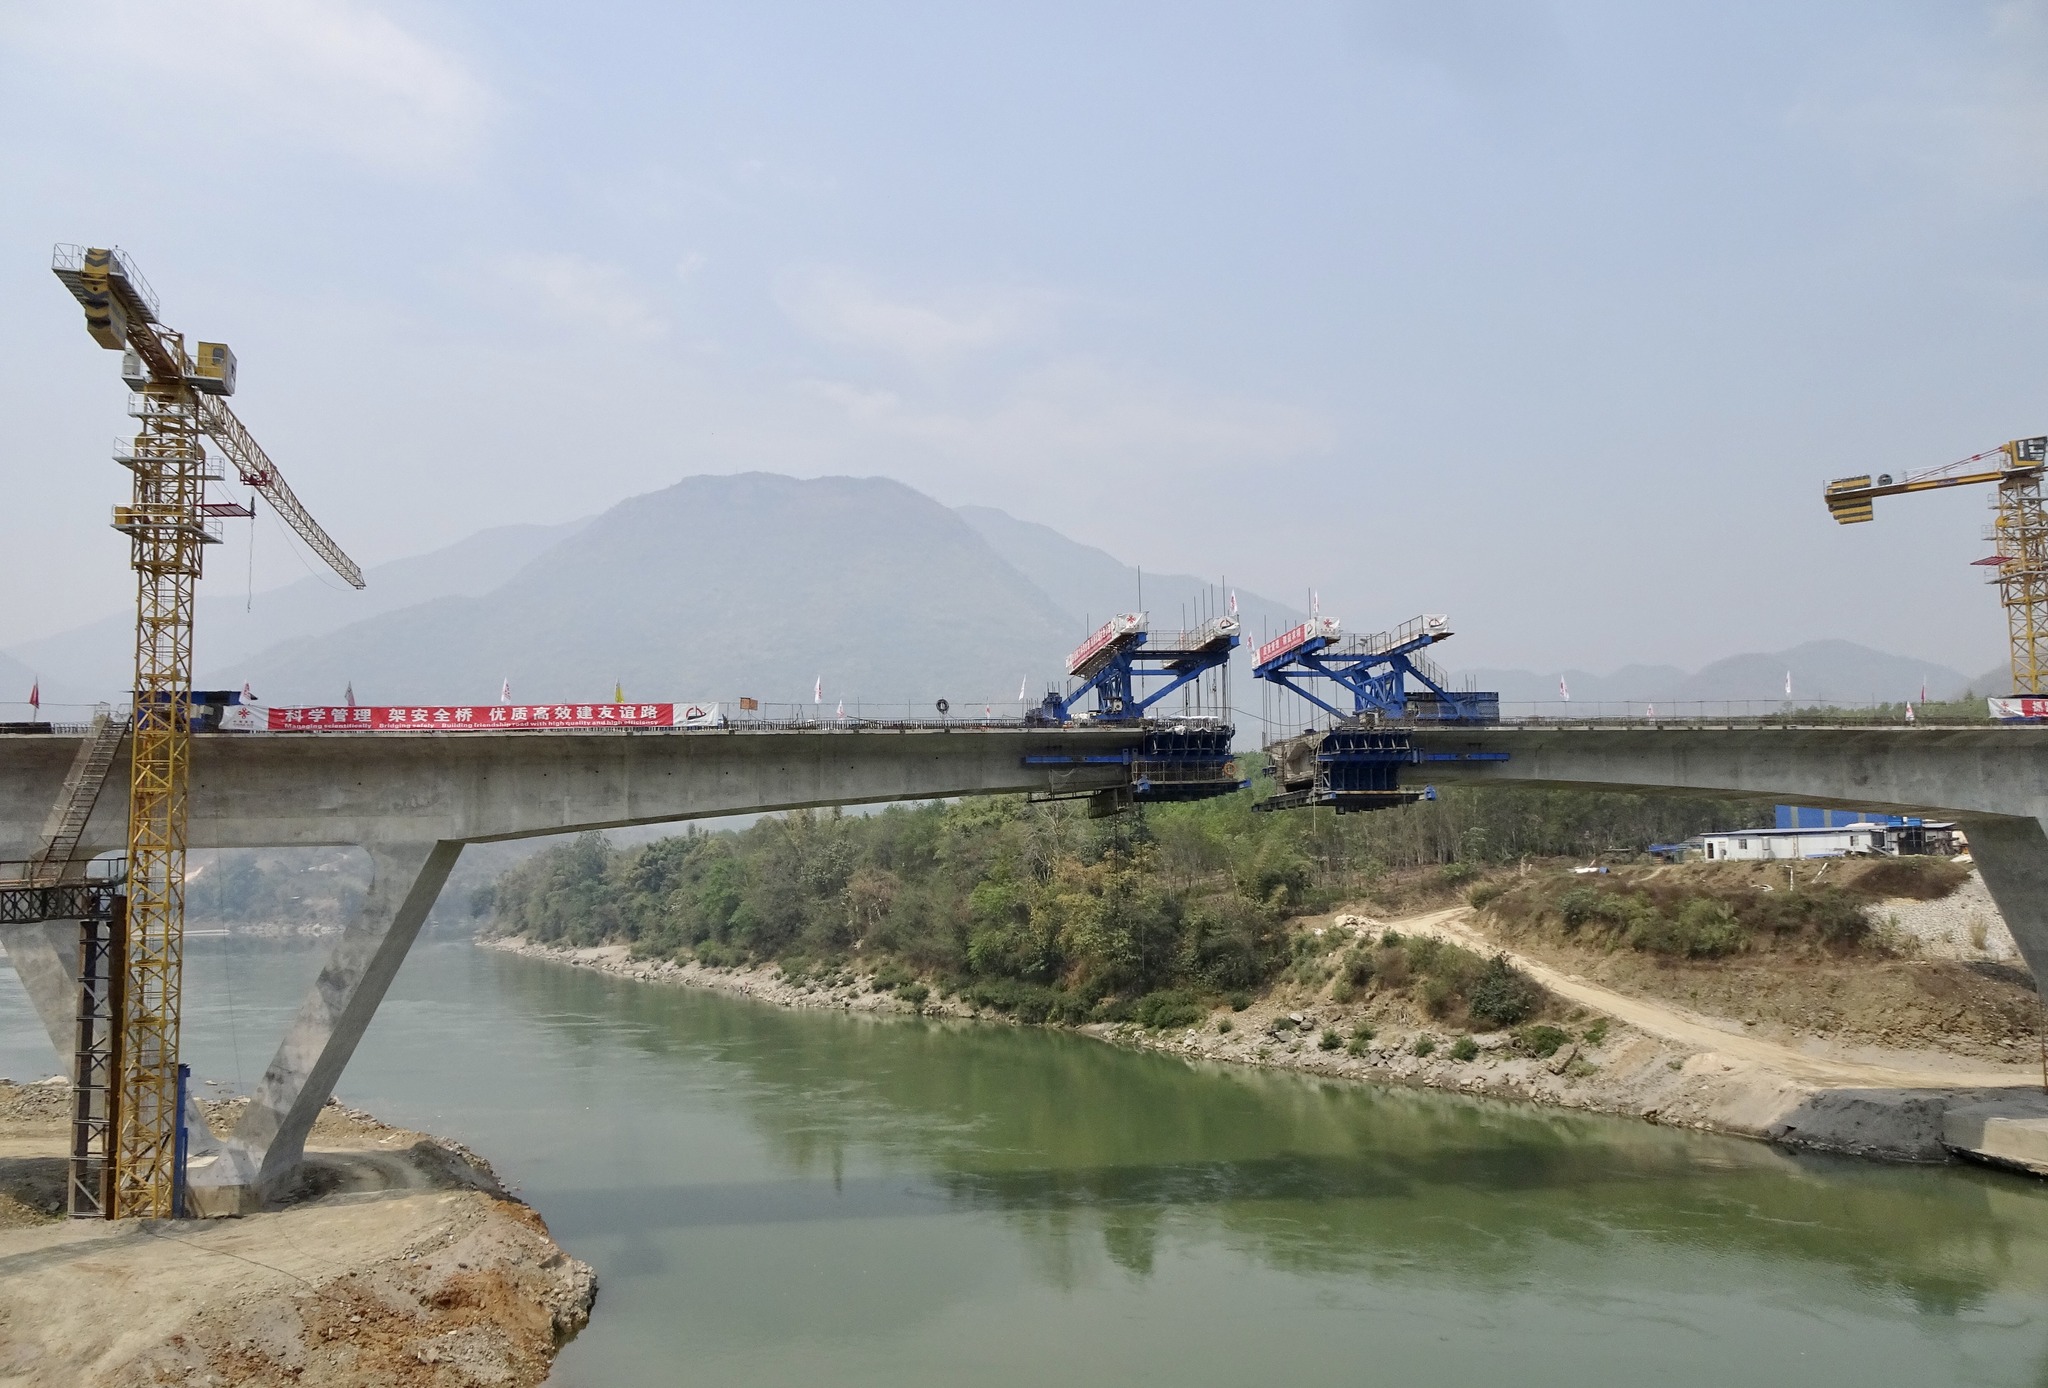 တရုတ်နိုင်ငံ၏အကူအညီဖြင့် တည်ဆောက်သော ကွမ်းလုံတံတား ယခုနှစ်တွင် တည်ဆောက်ပြီးစီးမည်